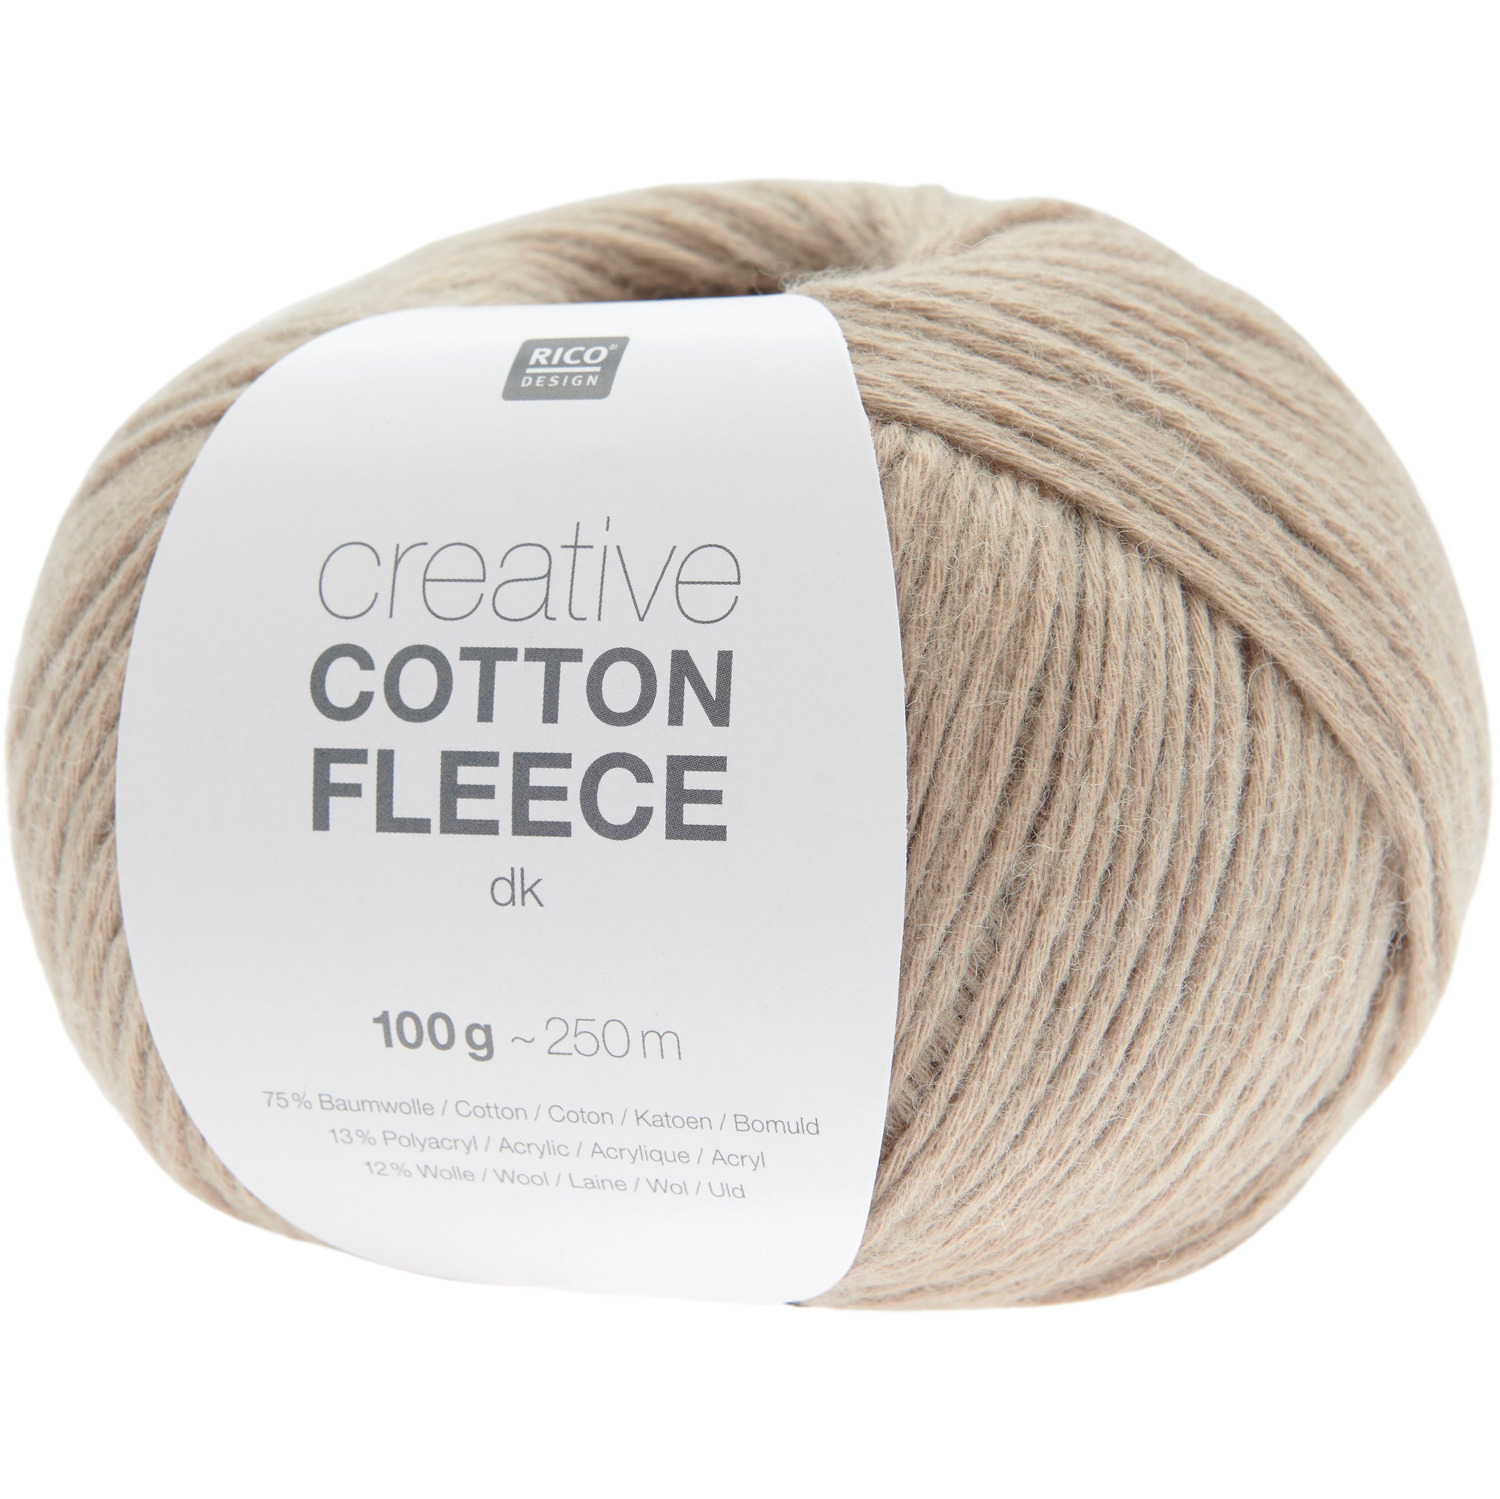 Creative Cotton Fleece dk